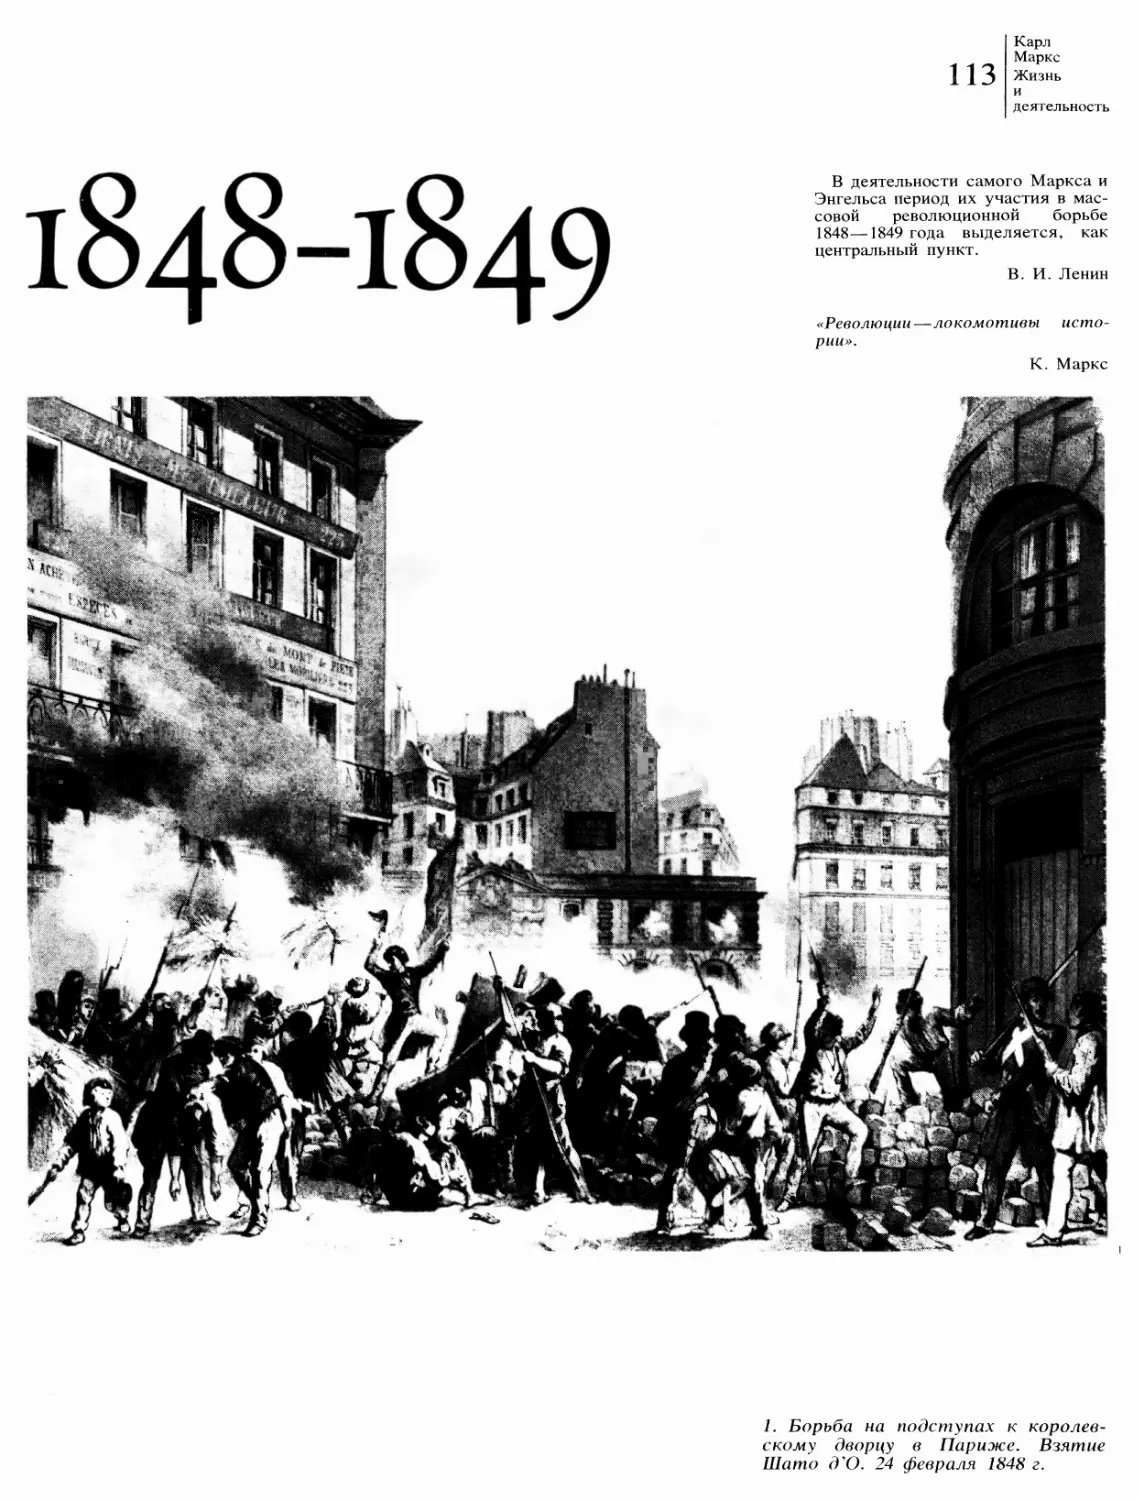 1848—1849